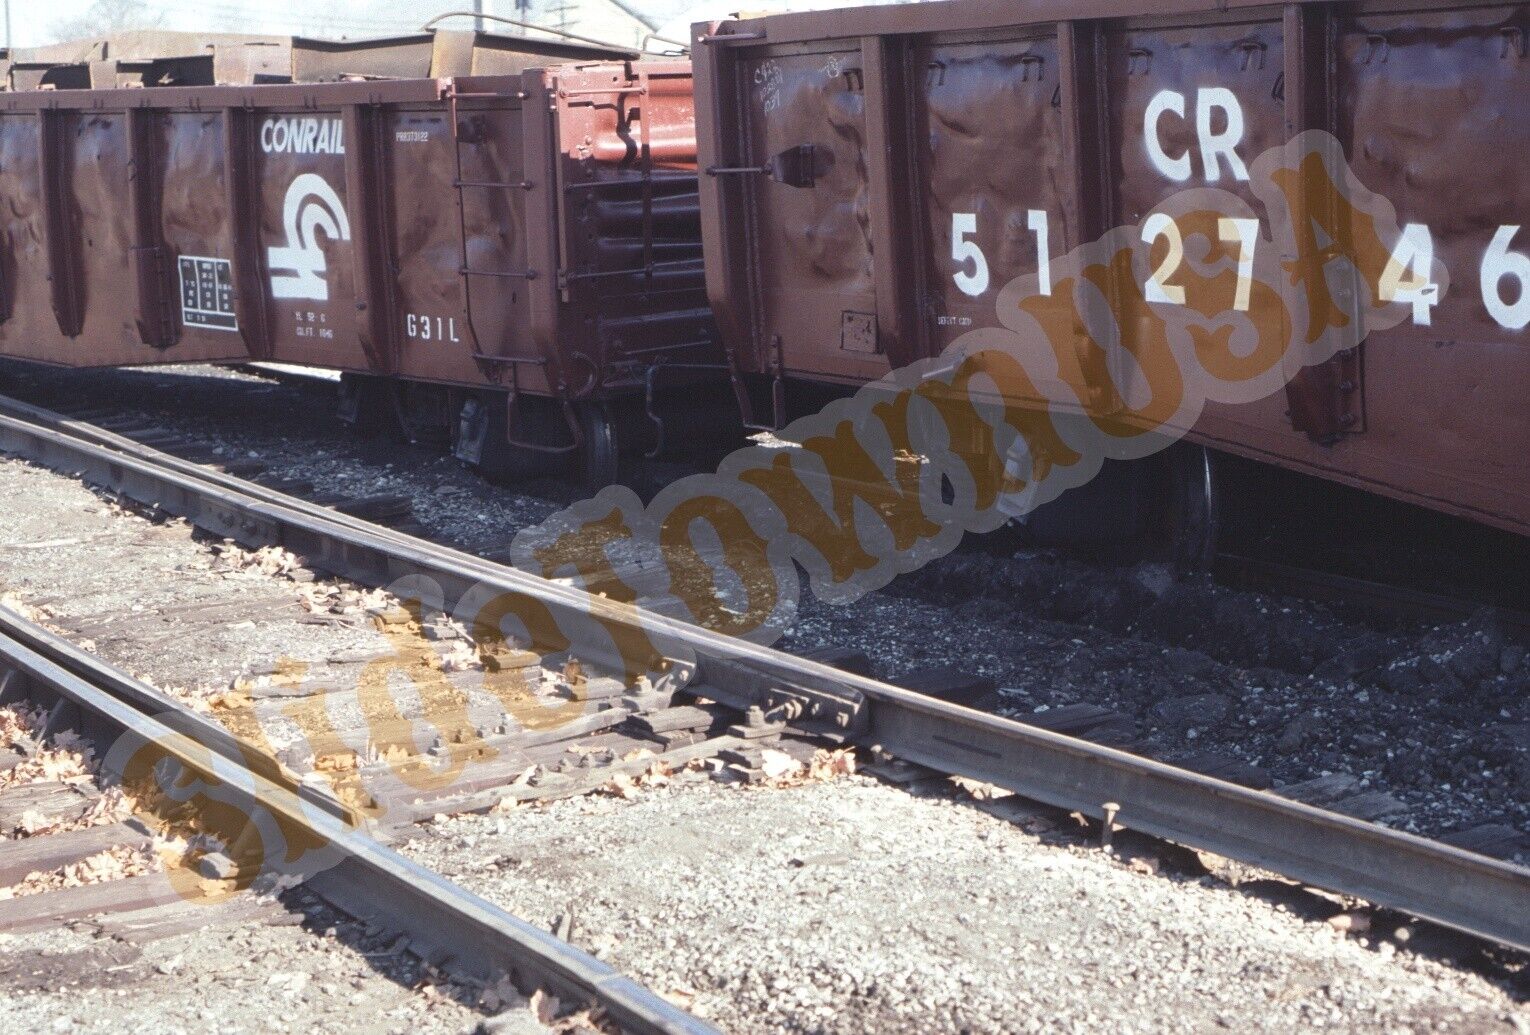 Vtg 1981 Train Slide CR 512746 Conrail Gondola X1T107